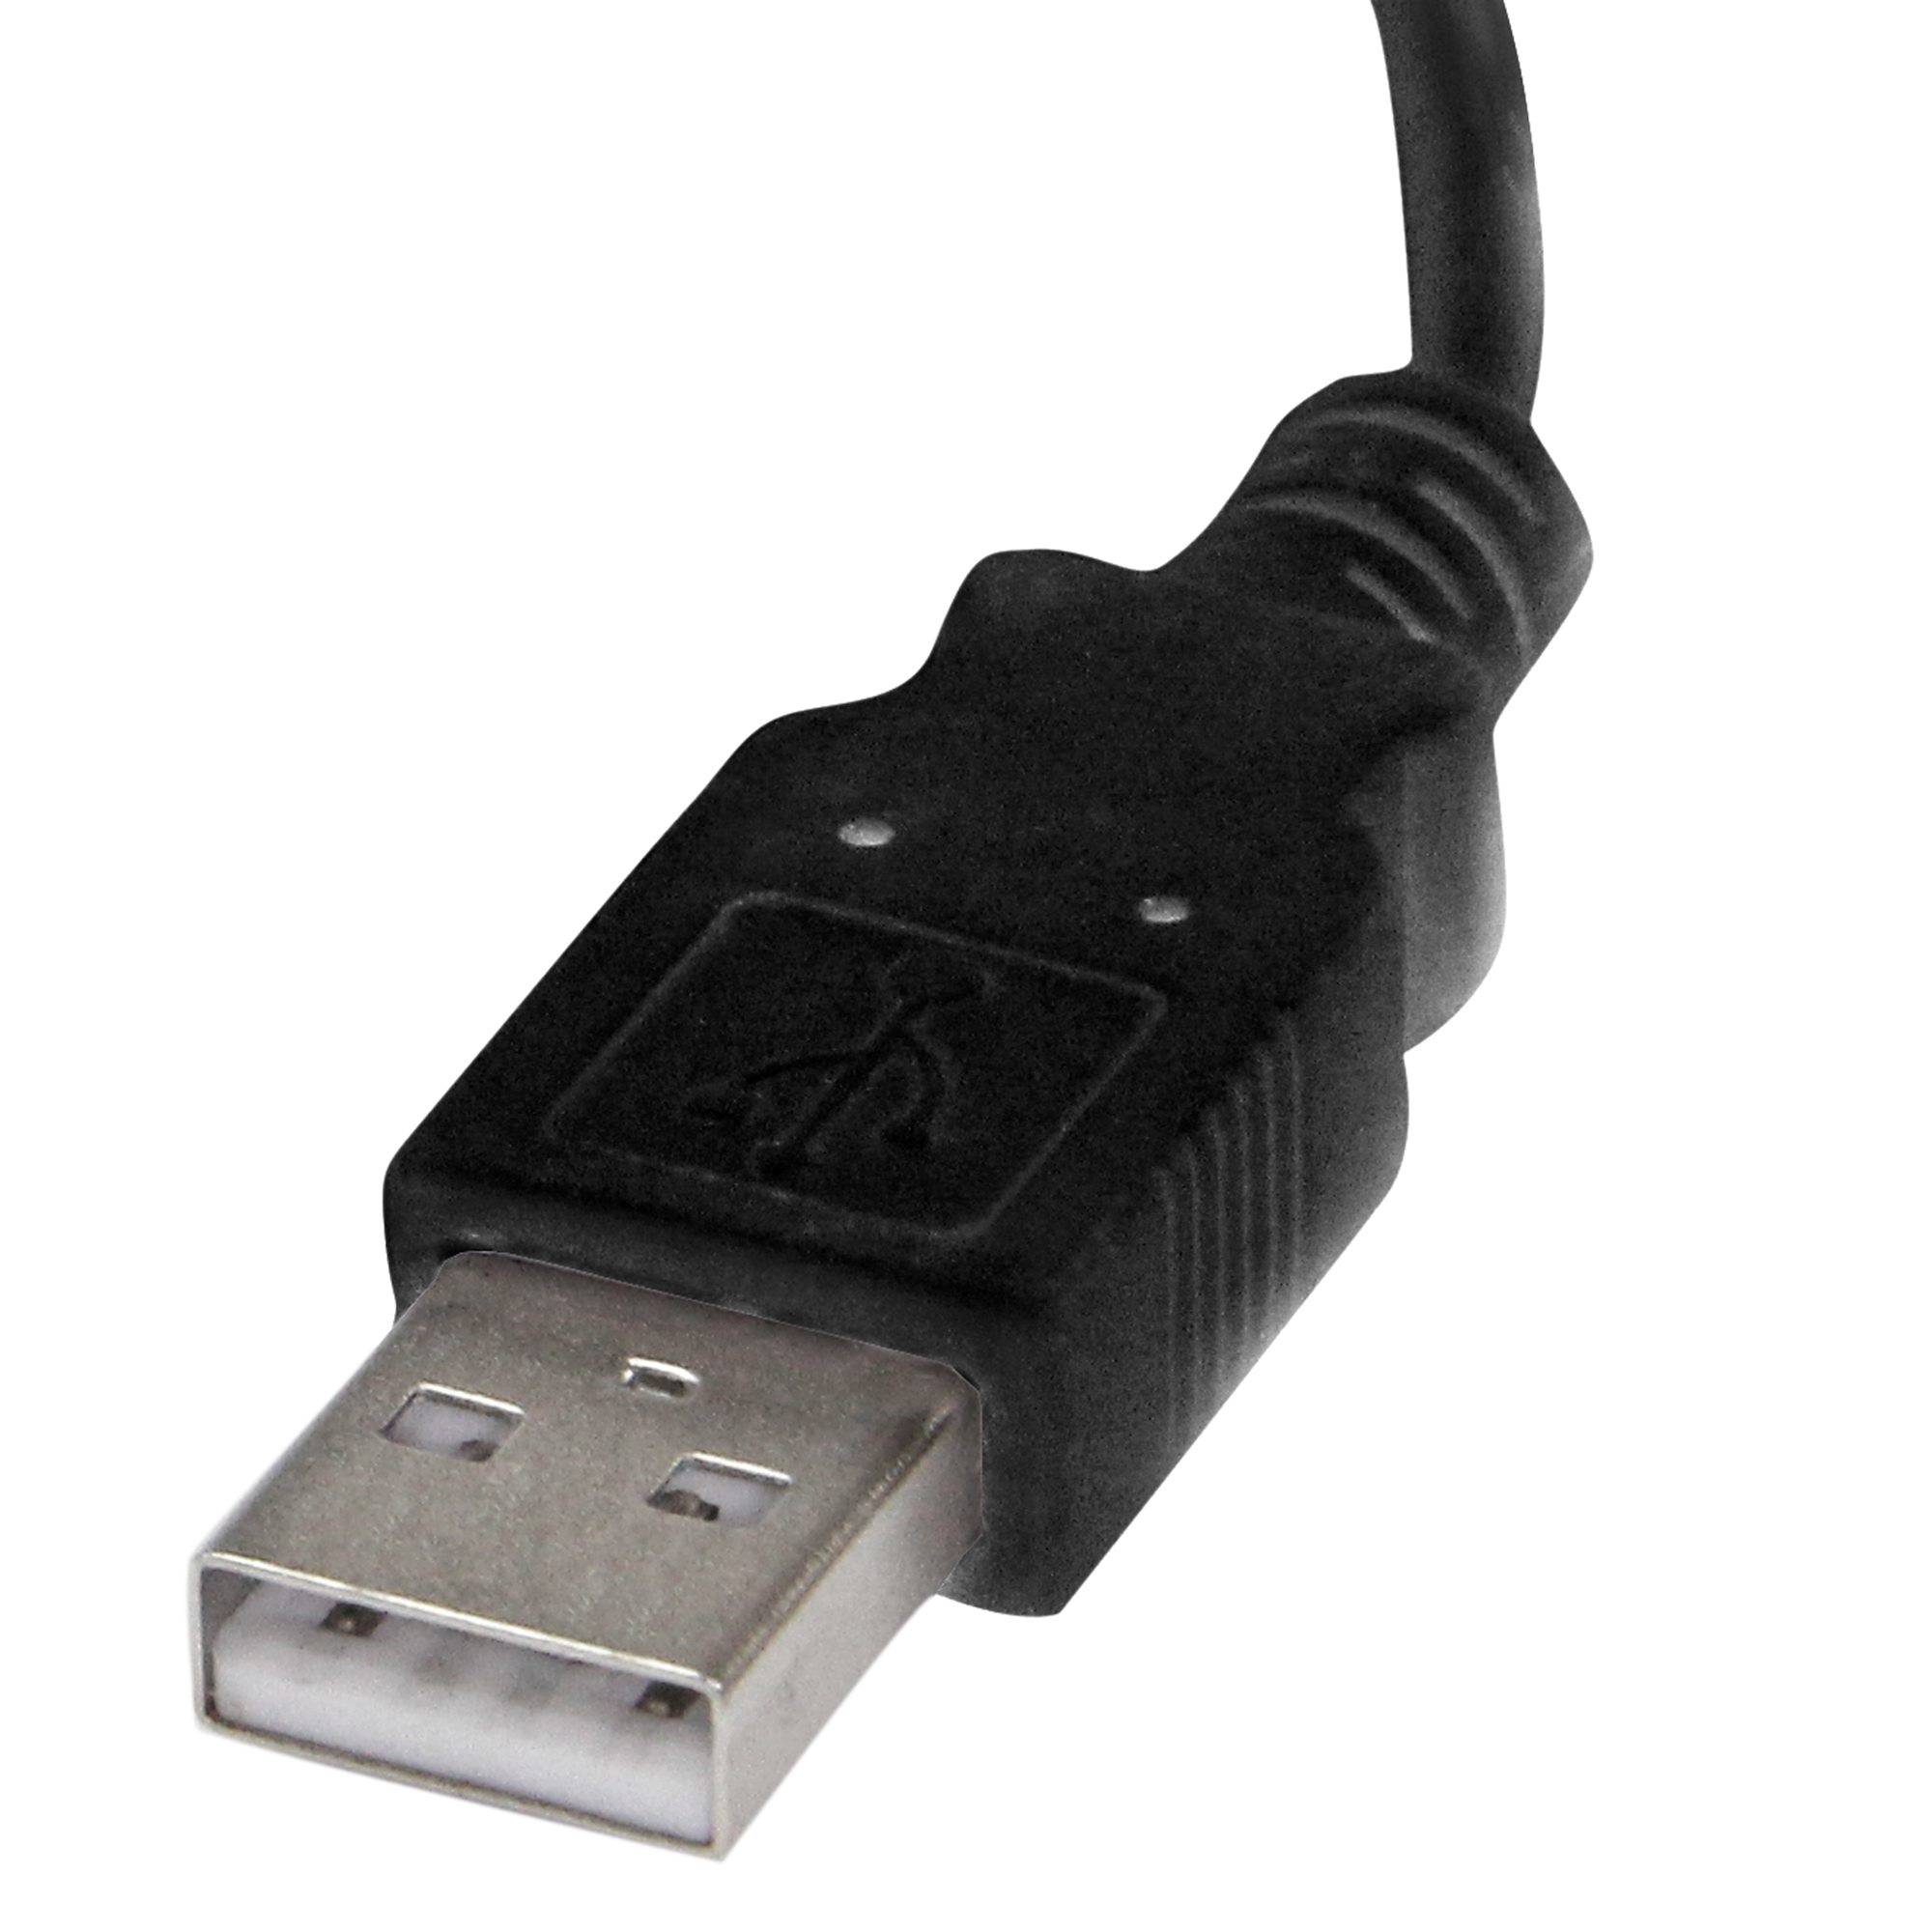 Rca Informatique - image du produit : HARDWARE-BASED USB DIAL-UP AND FAX MODEM - V.92 - EXTERNAL